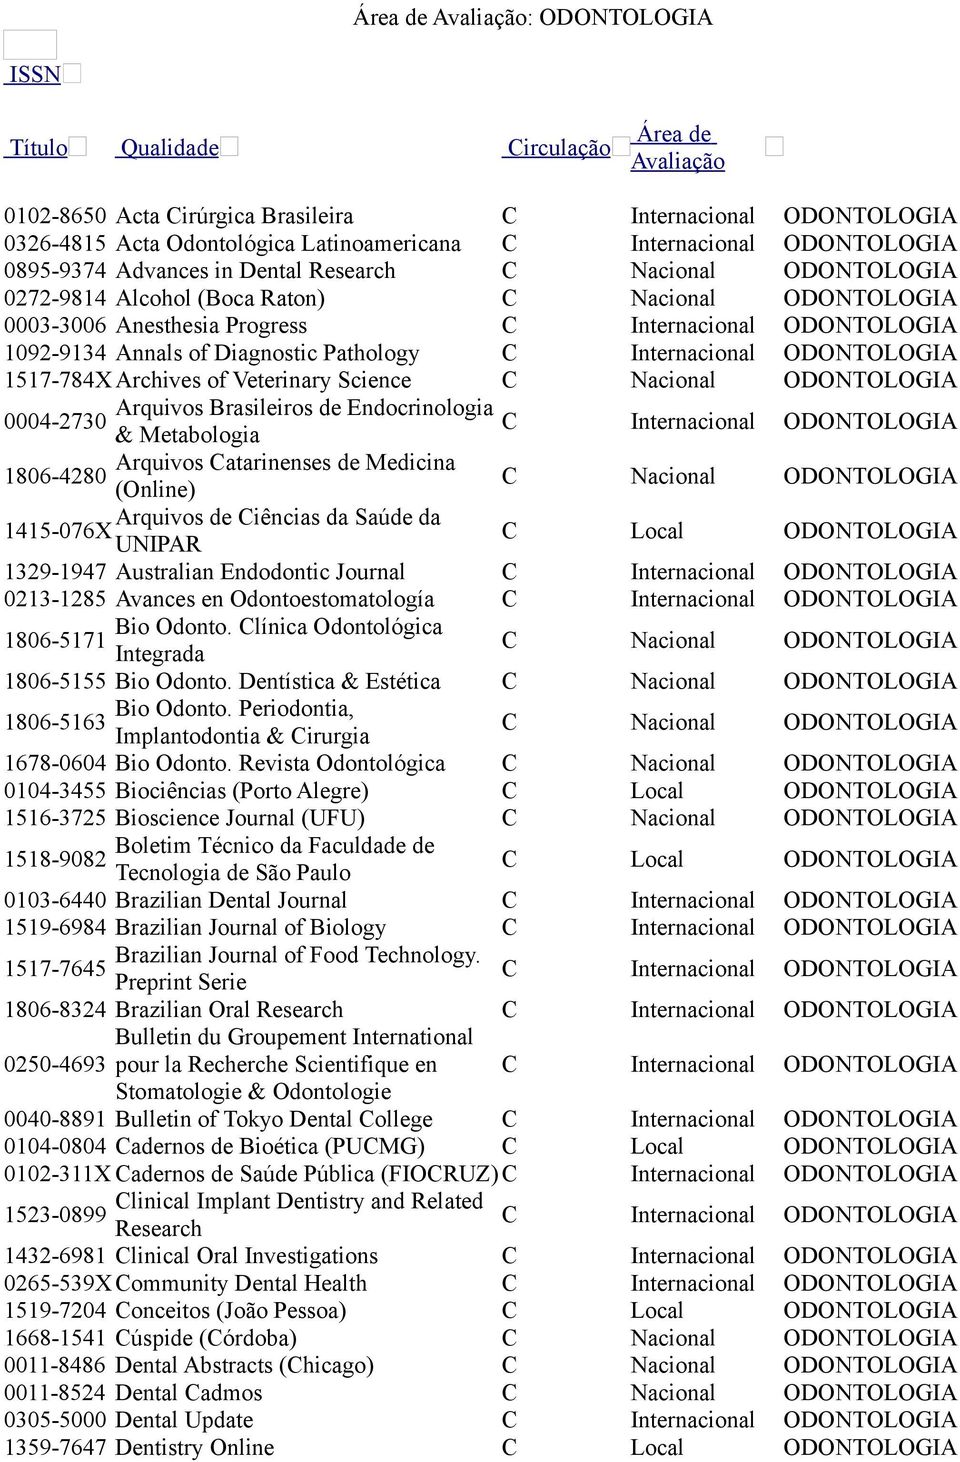 Metabologia Internacional ODONTOLOGIA Arquivos atarinenses de Medicina 1806-4280 (Online) Arquivos de iências da Saúde da 1415-076X UNIPAR Local ODONTOLOGIA 1329-1947 Australian Endodontic Journal